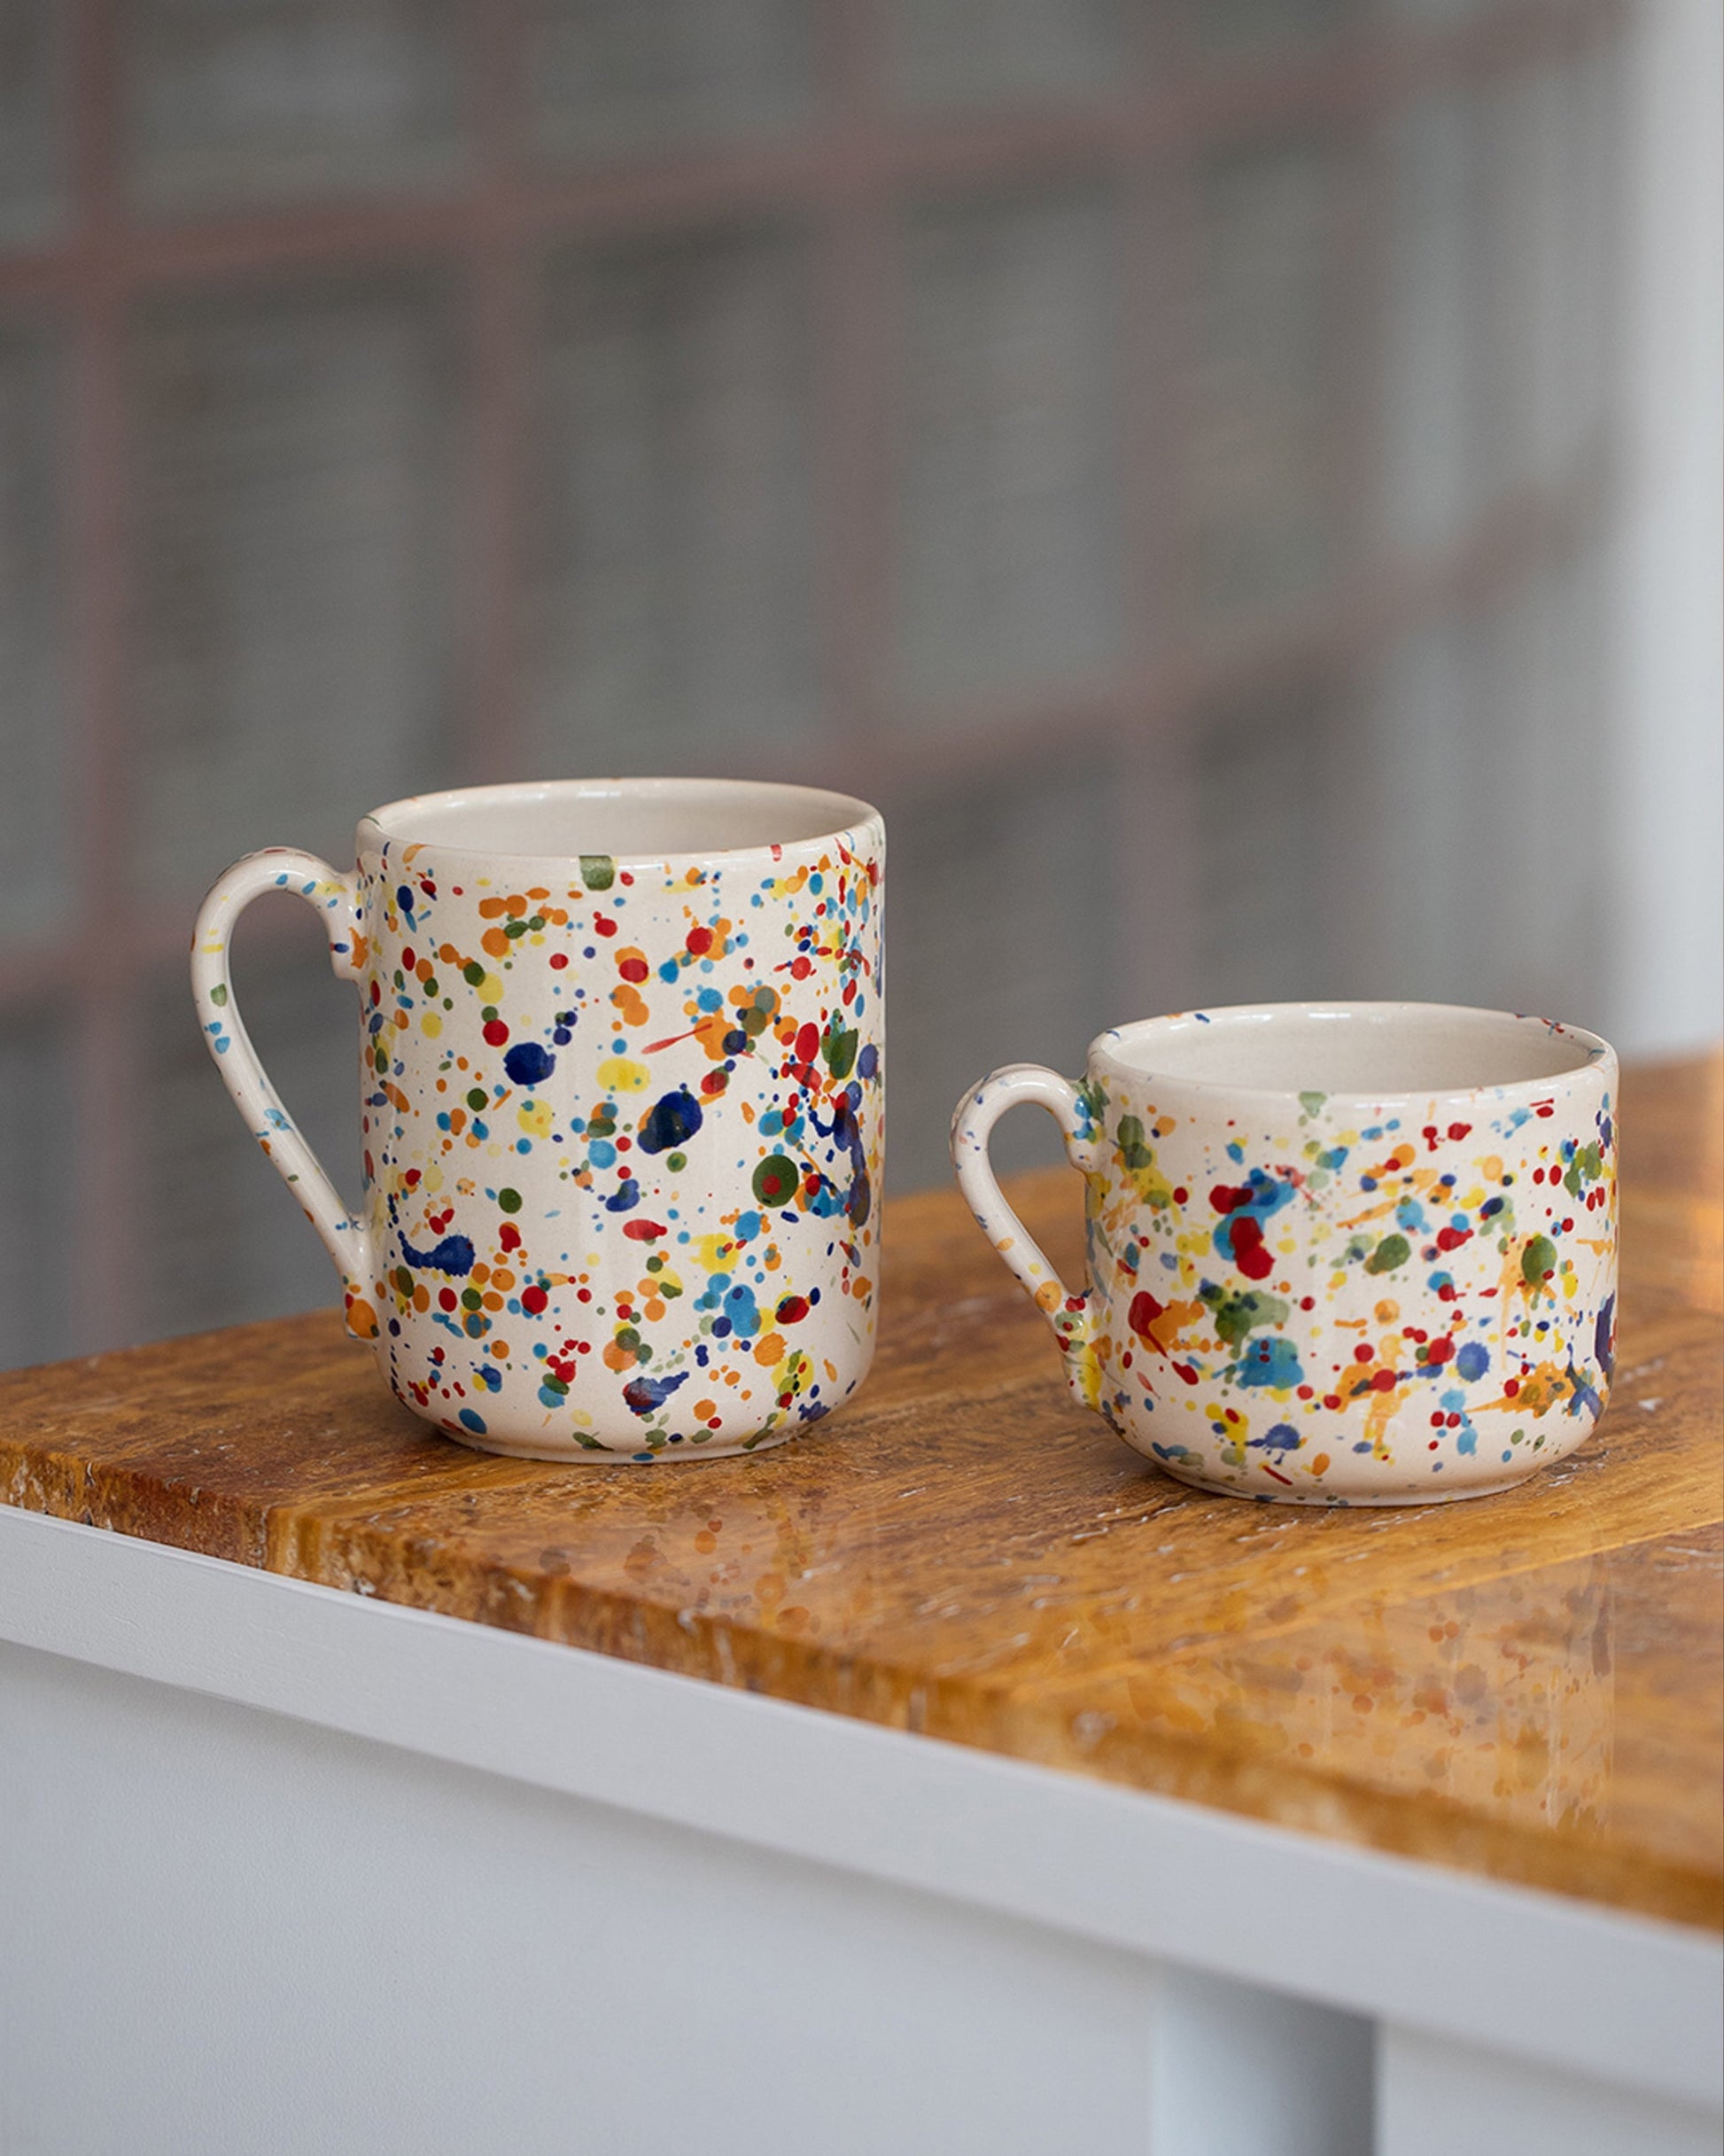  Coffee Mug and Tea Mug on light color background.